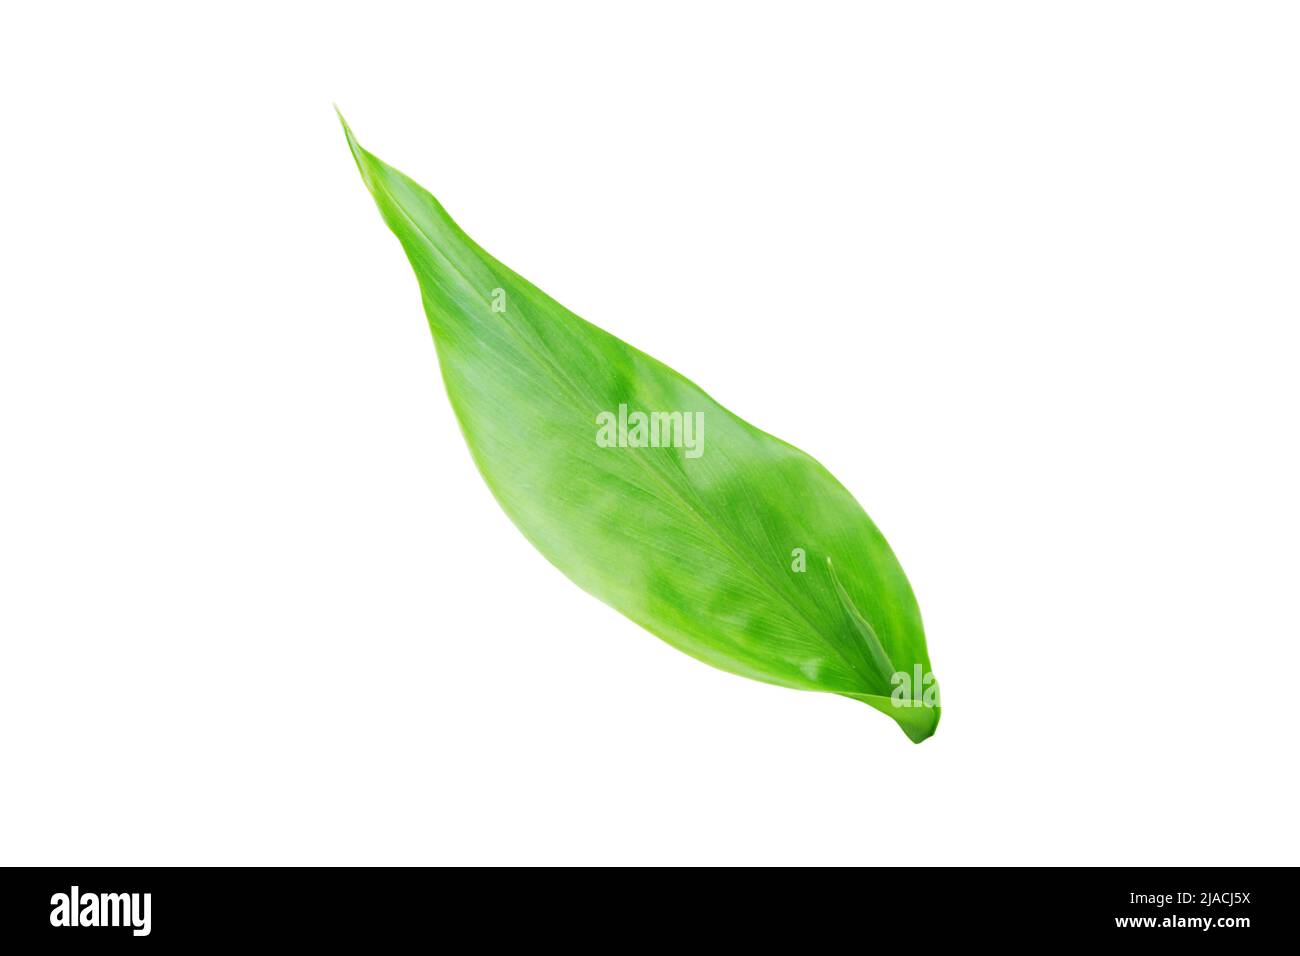 Ingwer oder Ingwerwurzel oder zingiber officinale Pflanze frisches Blatt isoliert auf weiß Stockfoto